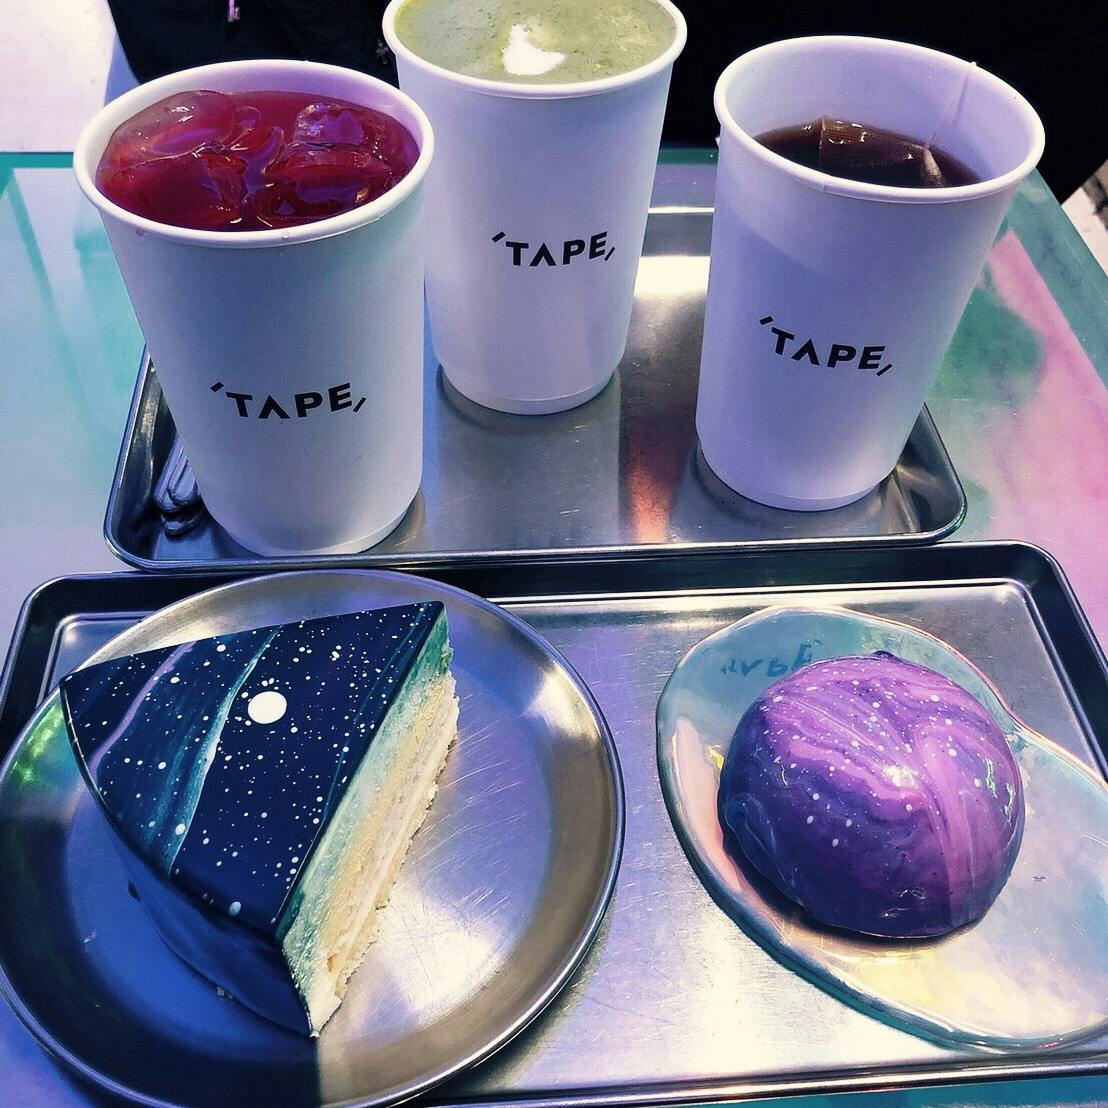 Cafe Tapeの投稿写真 感想 みどころ Cafe Tape 梨泰院宇宙ケーキ 食べたのは ゆ トリップノート